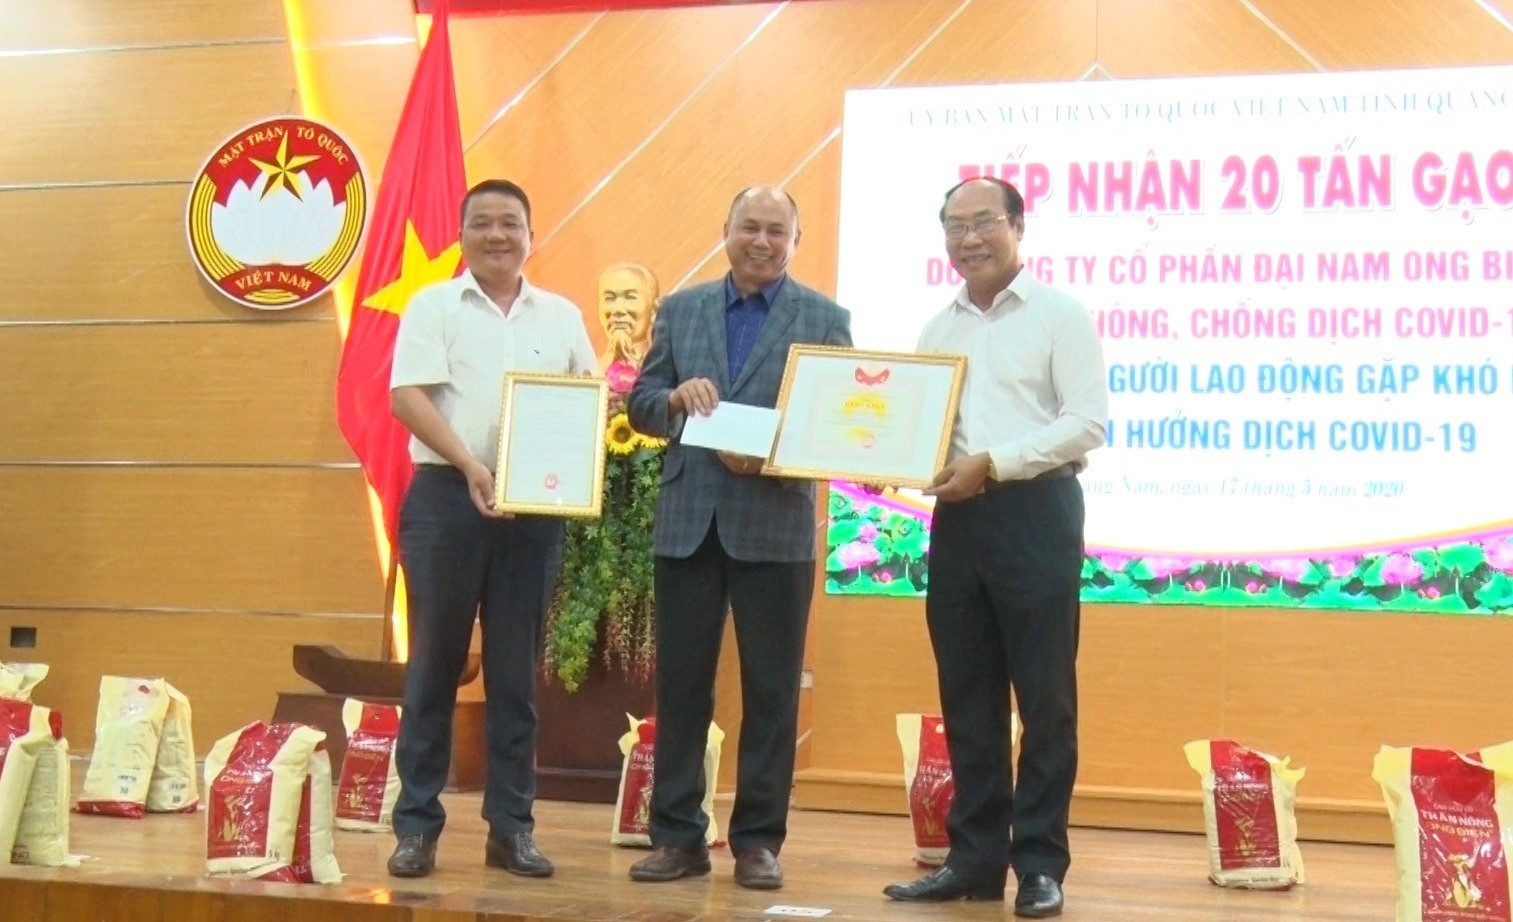 Chủ tịch Ủy ban MTTQ Việt Nam tỉnh Võ Xuân Ca tặng bằng khen Tập đoàn Sản xuất nông nghiệp - thực phẩm công nghệ cao Đại Nam Ong Biển. Ảnh: Đ.ĐẠO